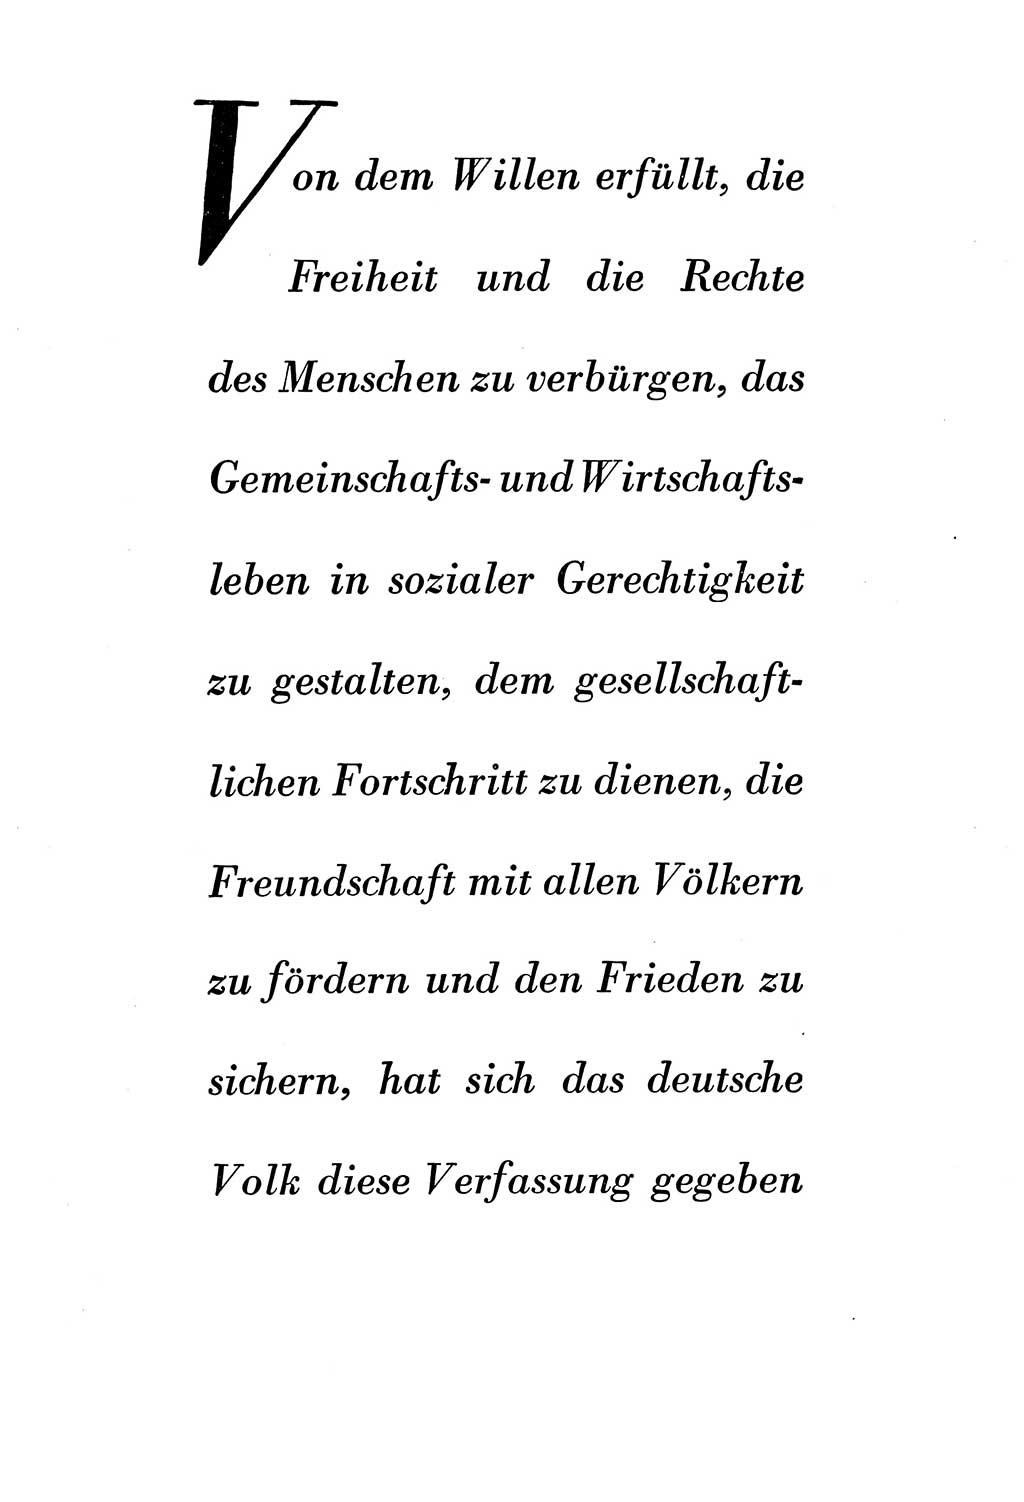 Verfassung der Deutschen Demokratischen Republik (DDR) vom 7. Oktober 1949, Seite 8 (Verf. DDR 1949, S. 8)